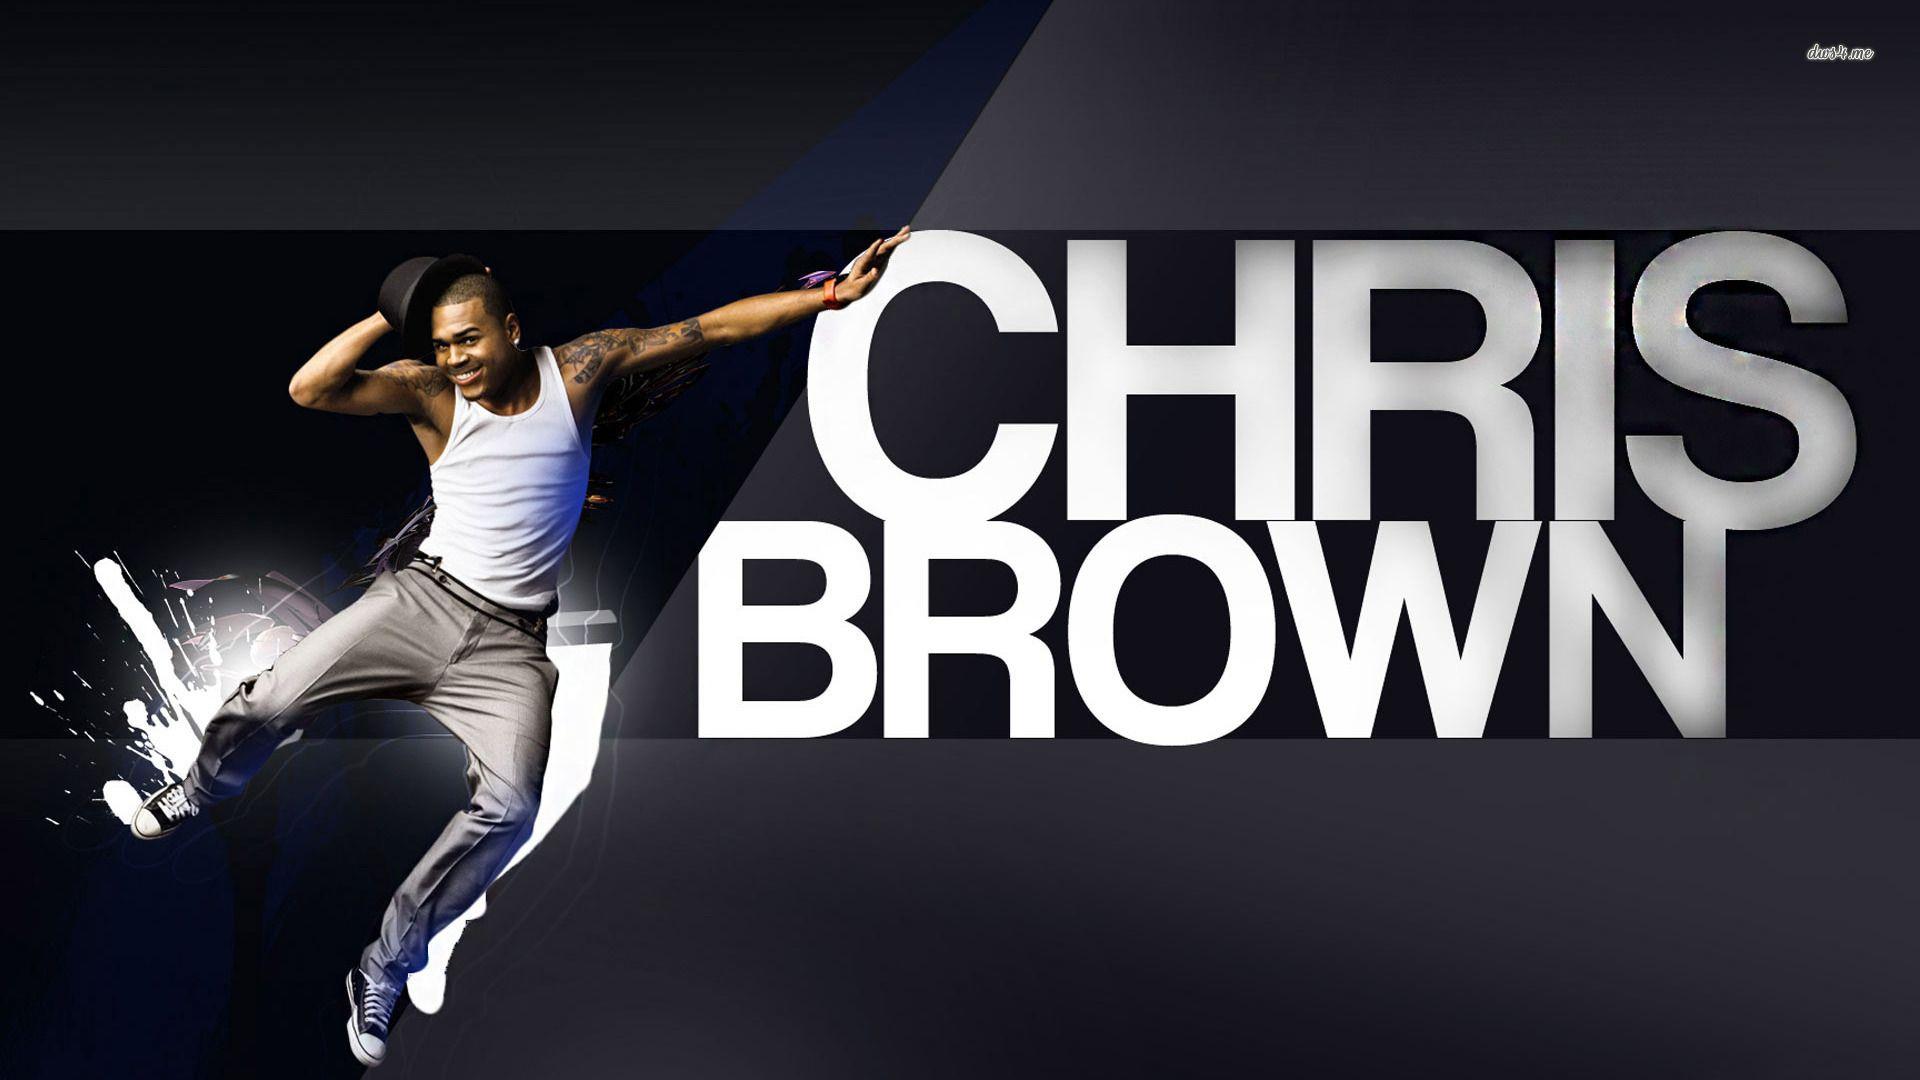 Chris Brown Wallpaper, 46 Chris Brown Wallpaper, LJ